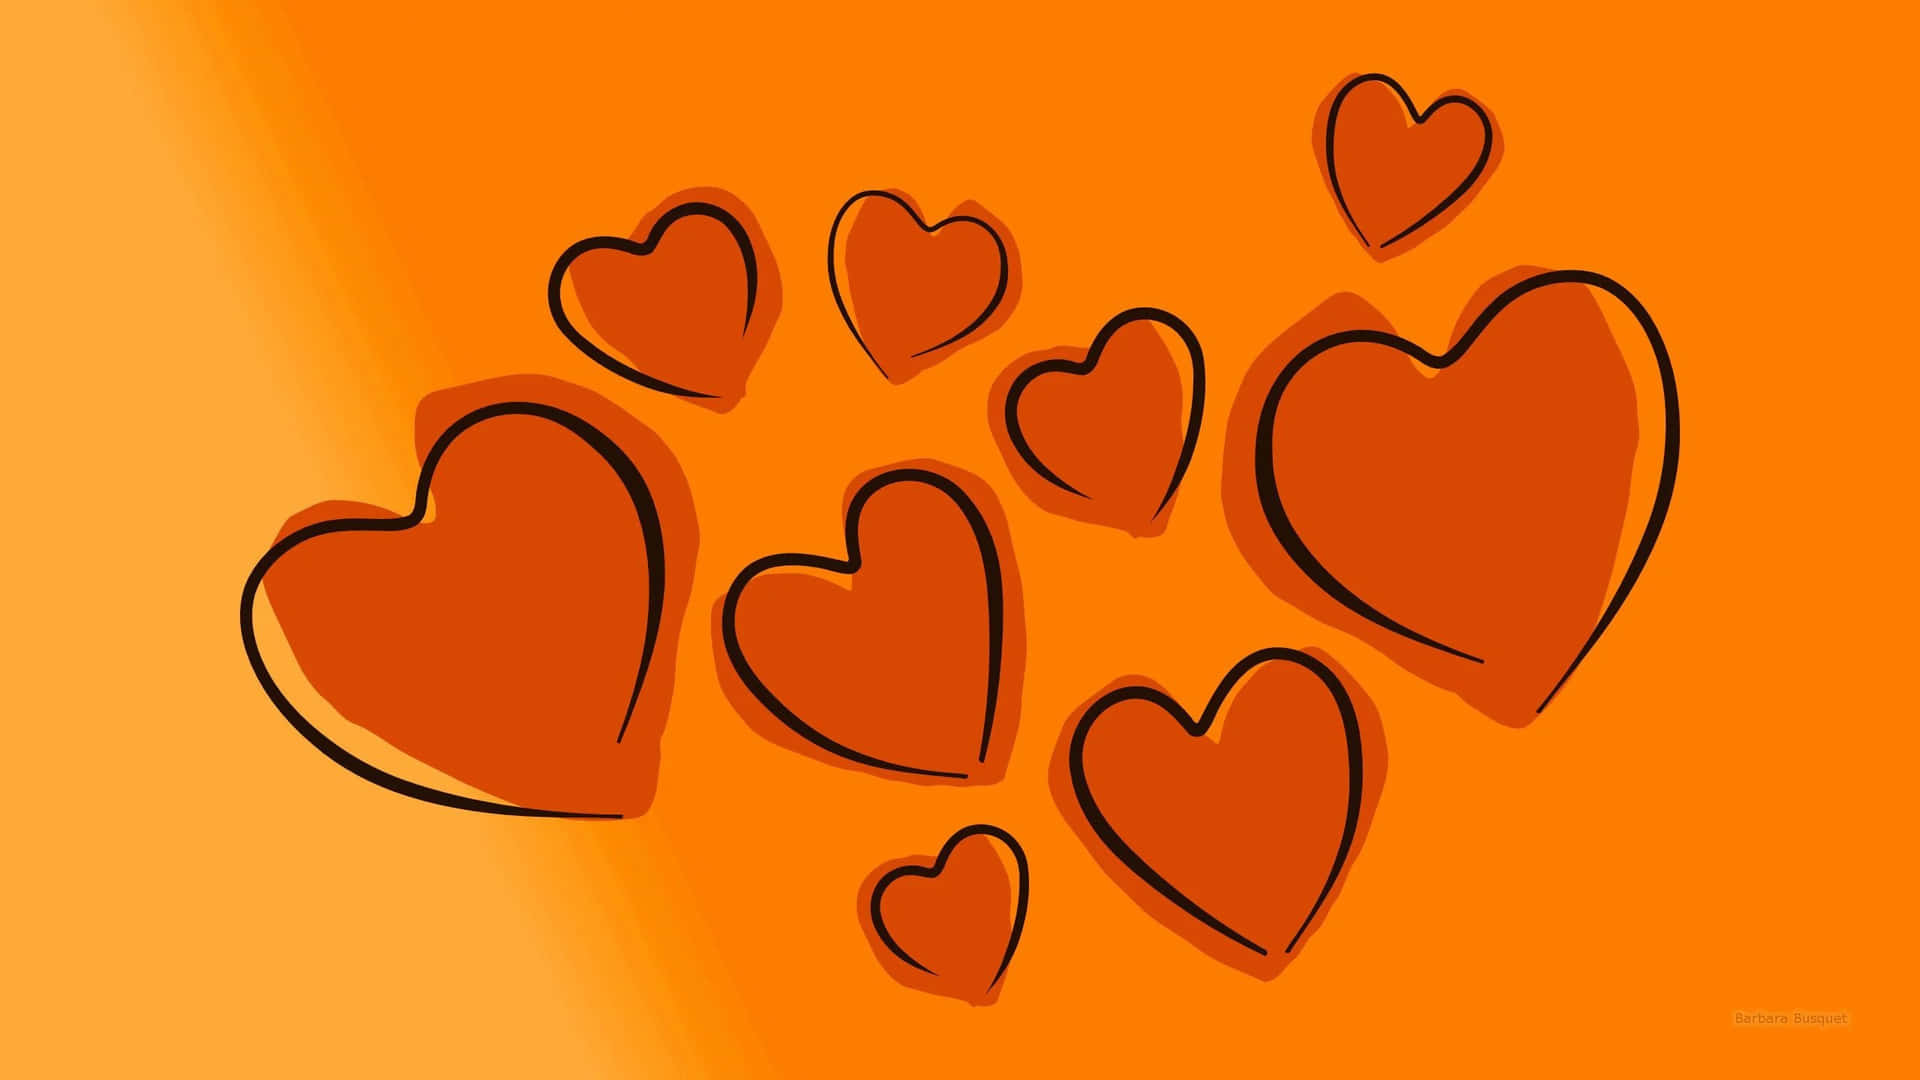 "A Glowing Orange Heart" Wallpaper